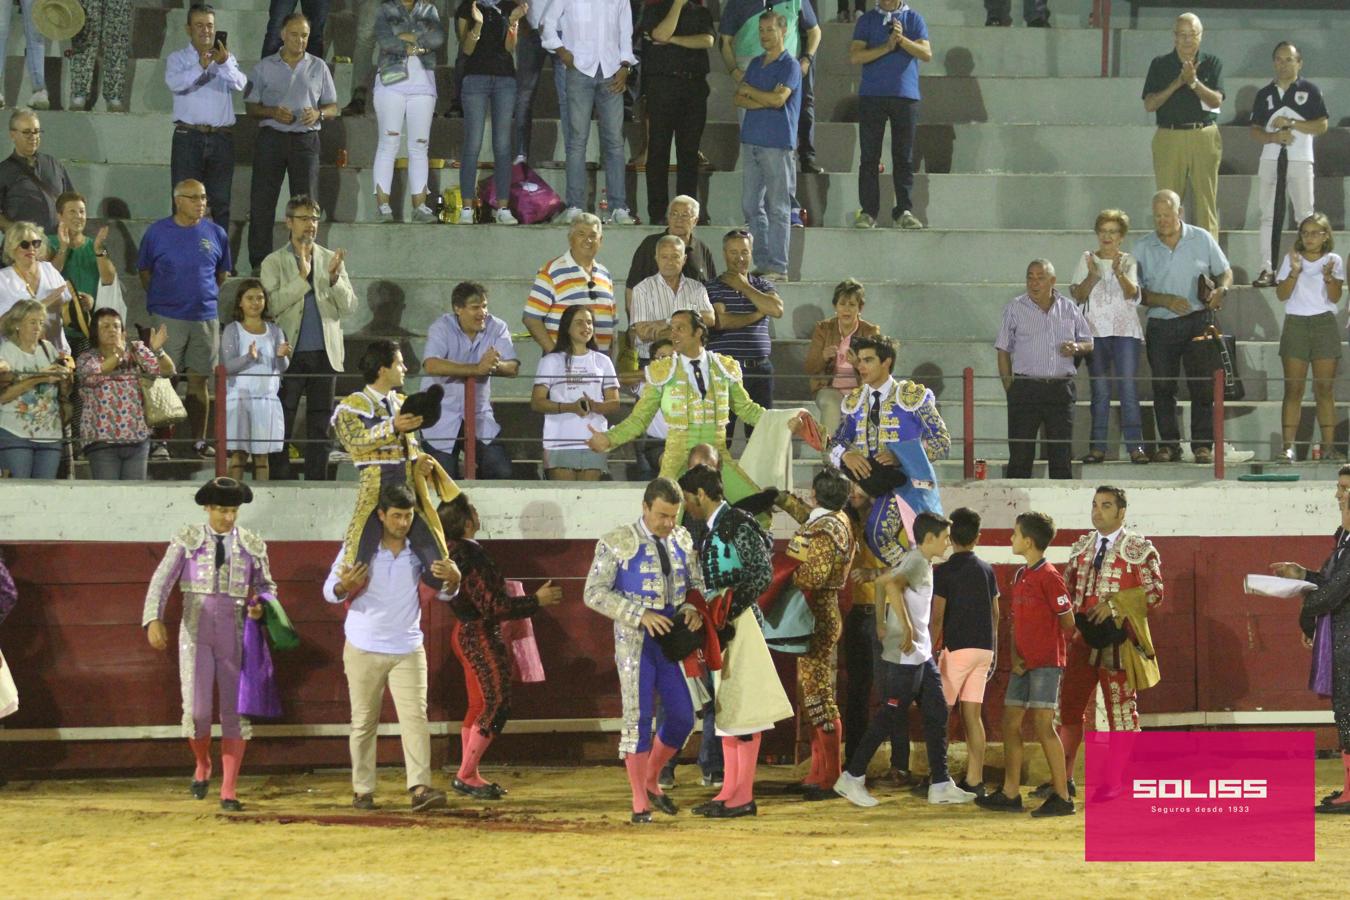 Gran ambiente en la corrida de toros de las fiestas de Bargas